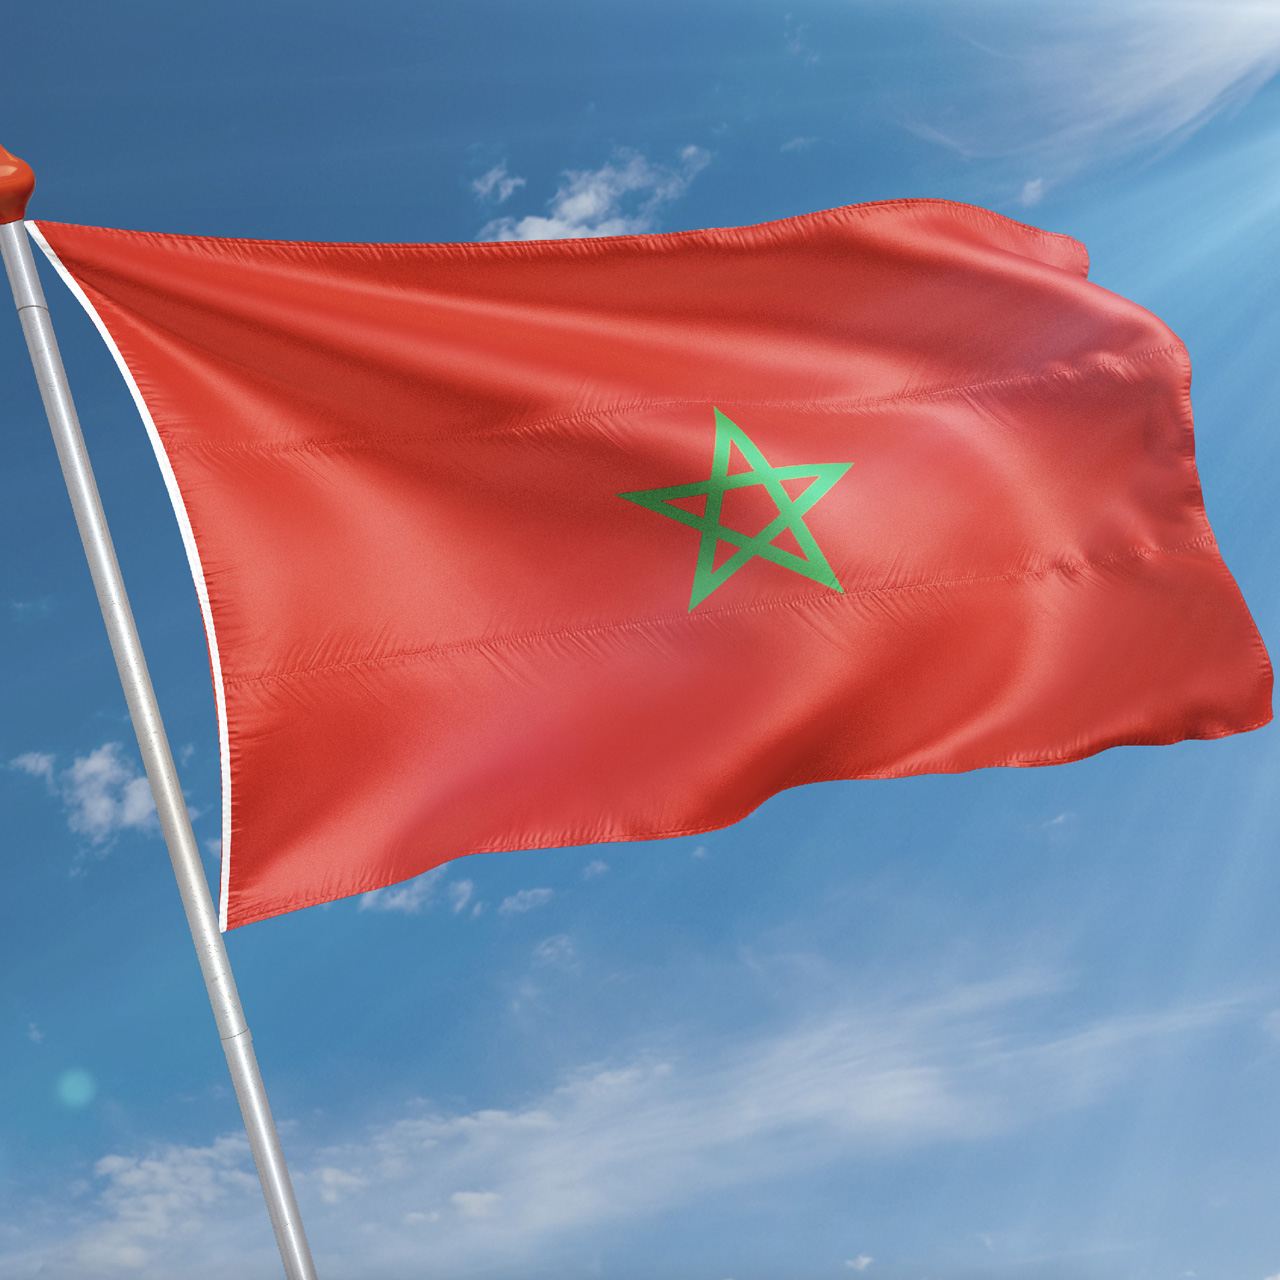 Trots op traditie: De Marokkaanse vlag naast de Franse vlag